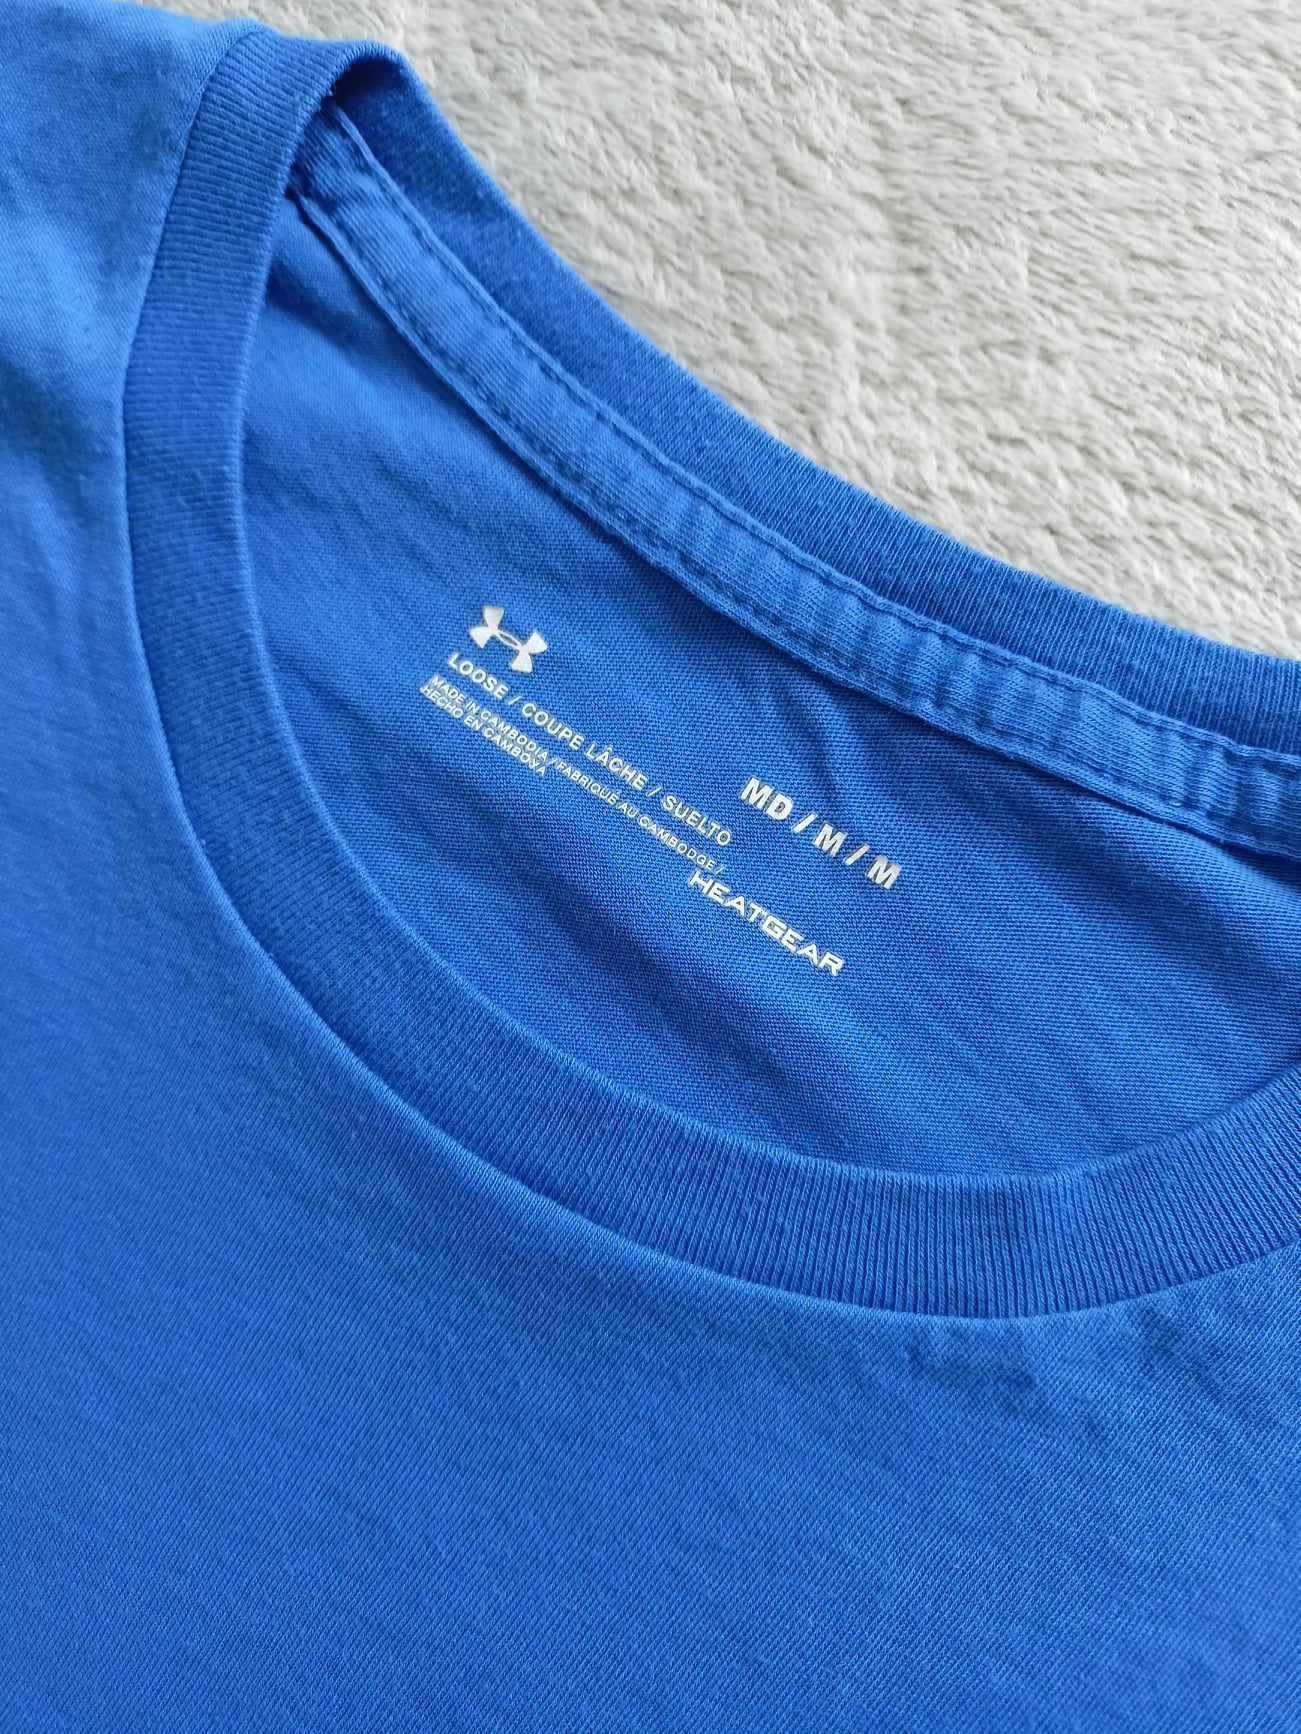 Męski t-shirt/koszulka Under Armour niebieski, rozmiar M (na oko M/L)